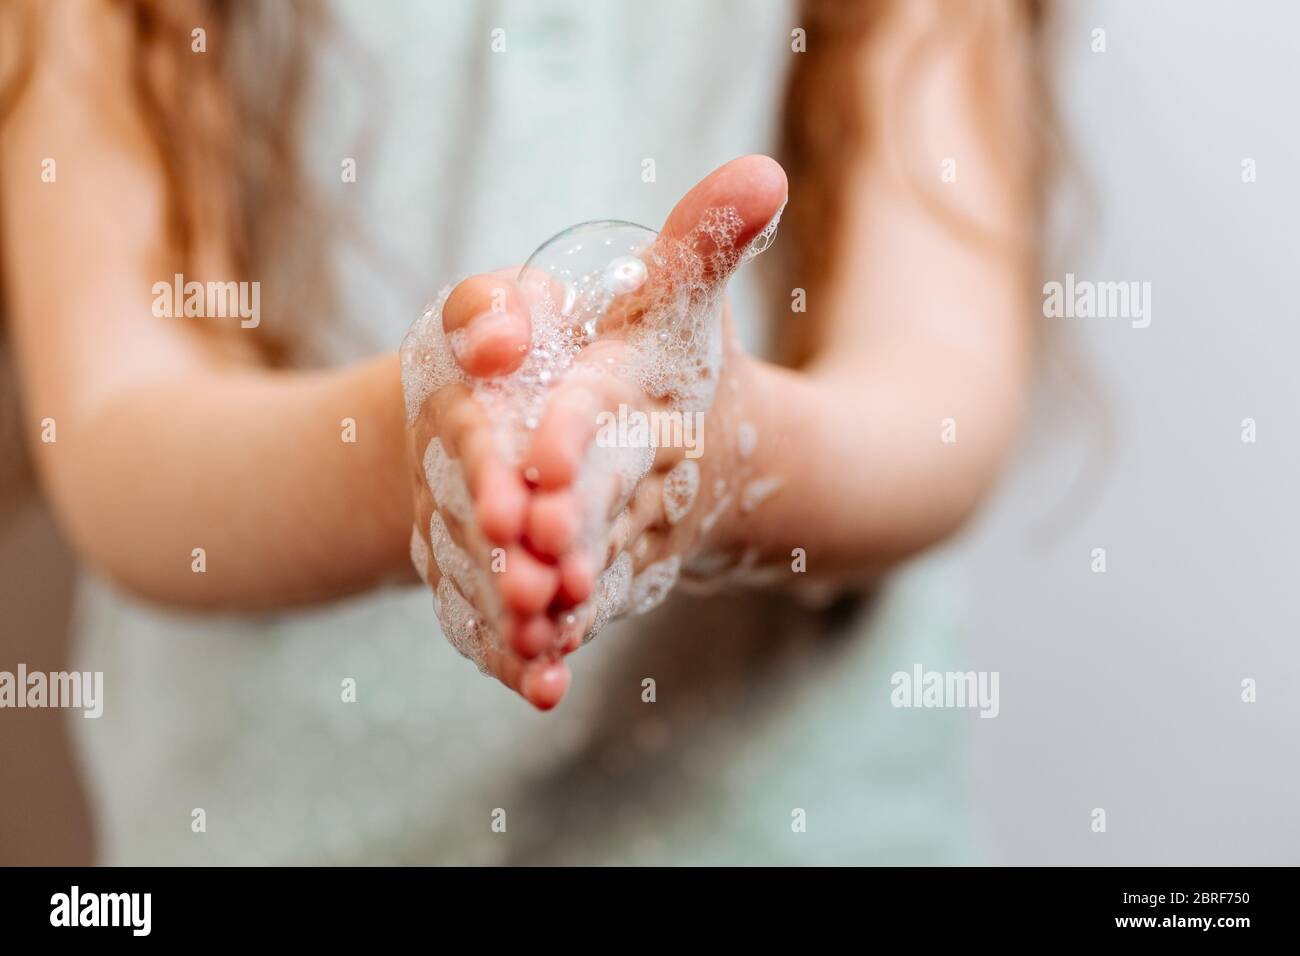 Mains pour enfants en mousse savonneuse. N'oubliez pas de se laver les mains Banque D'Images